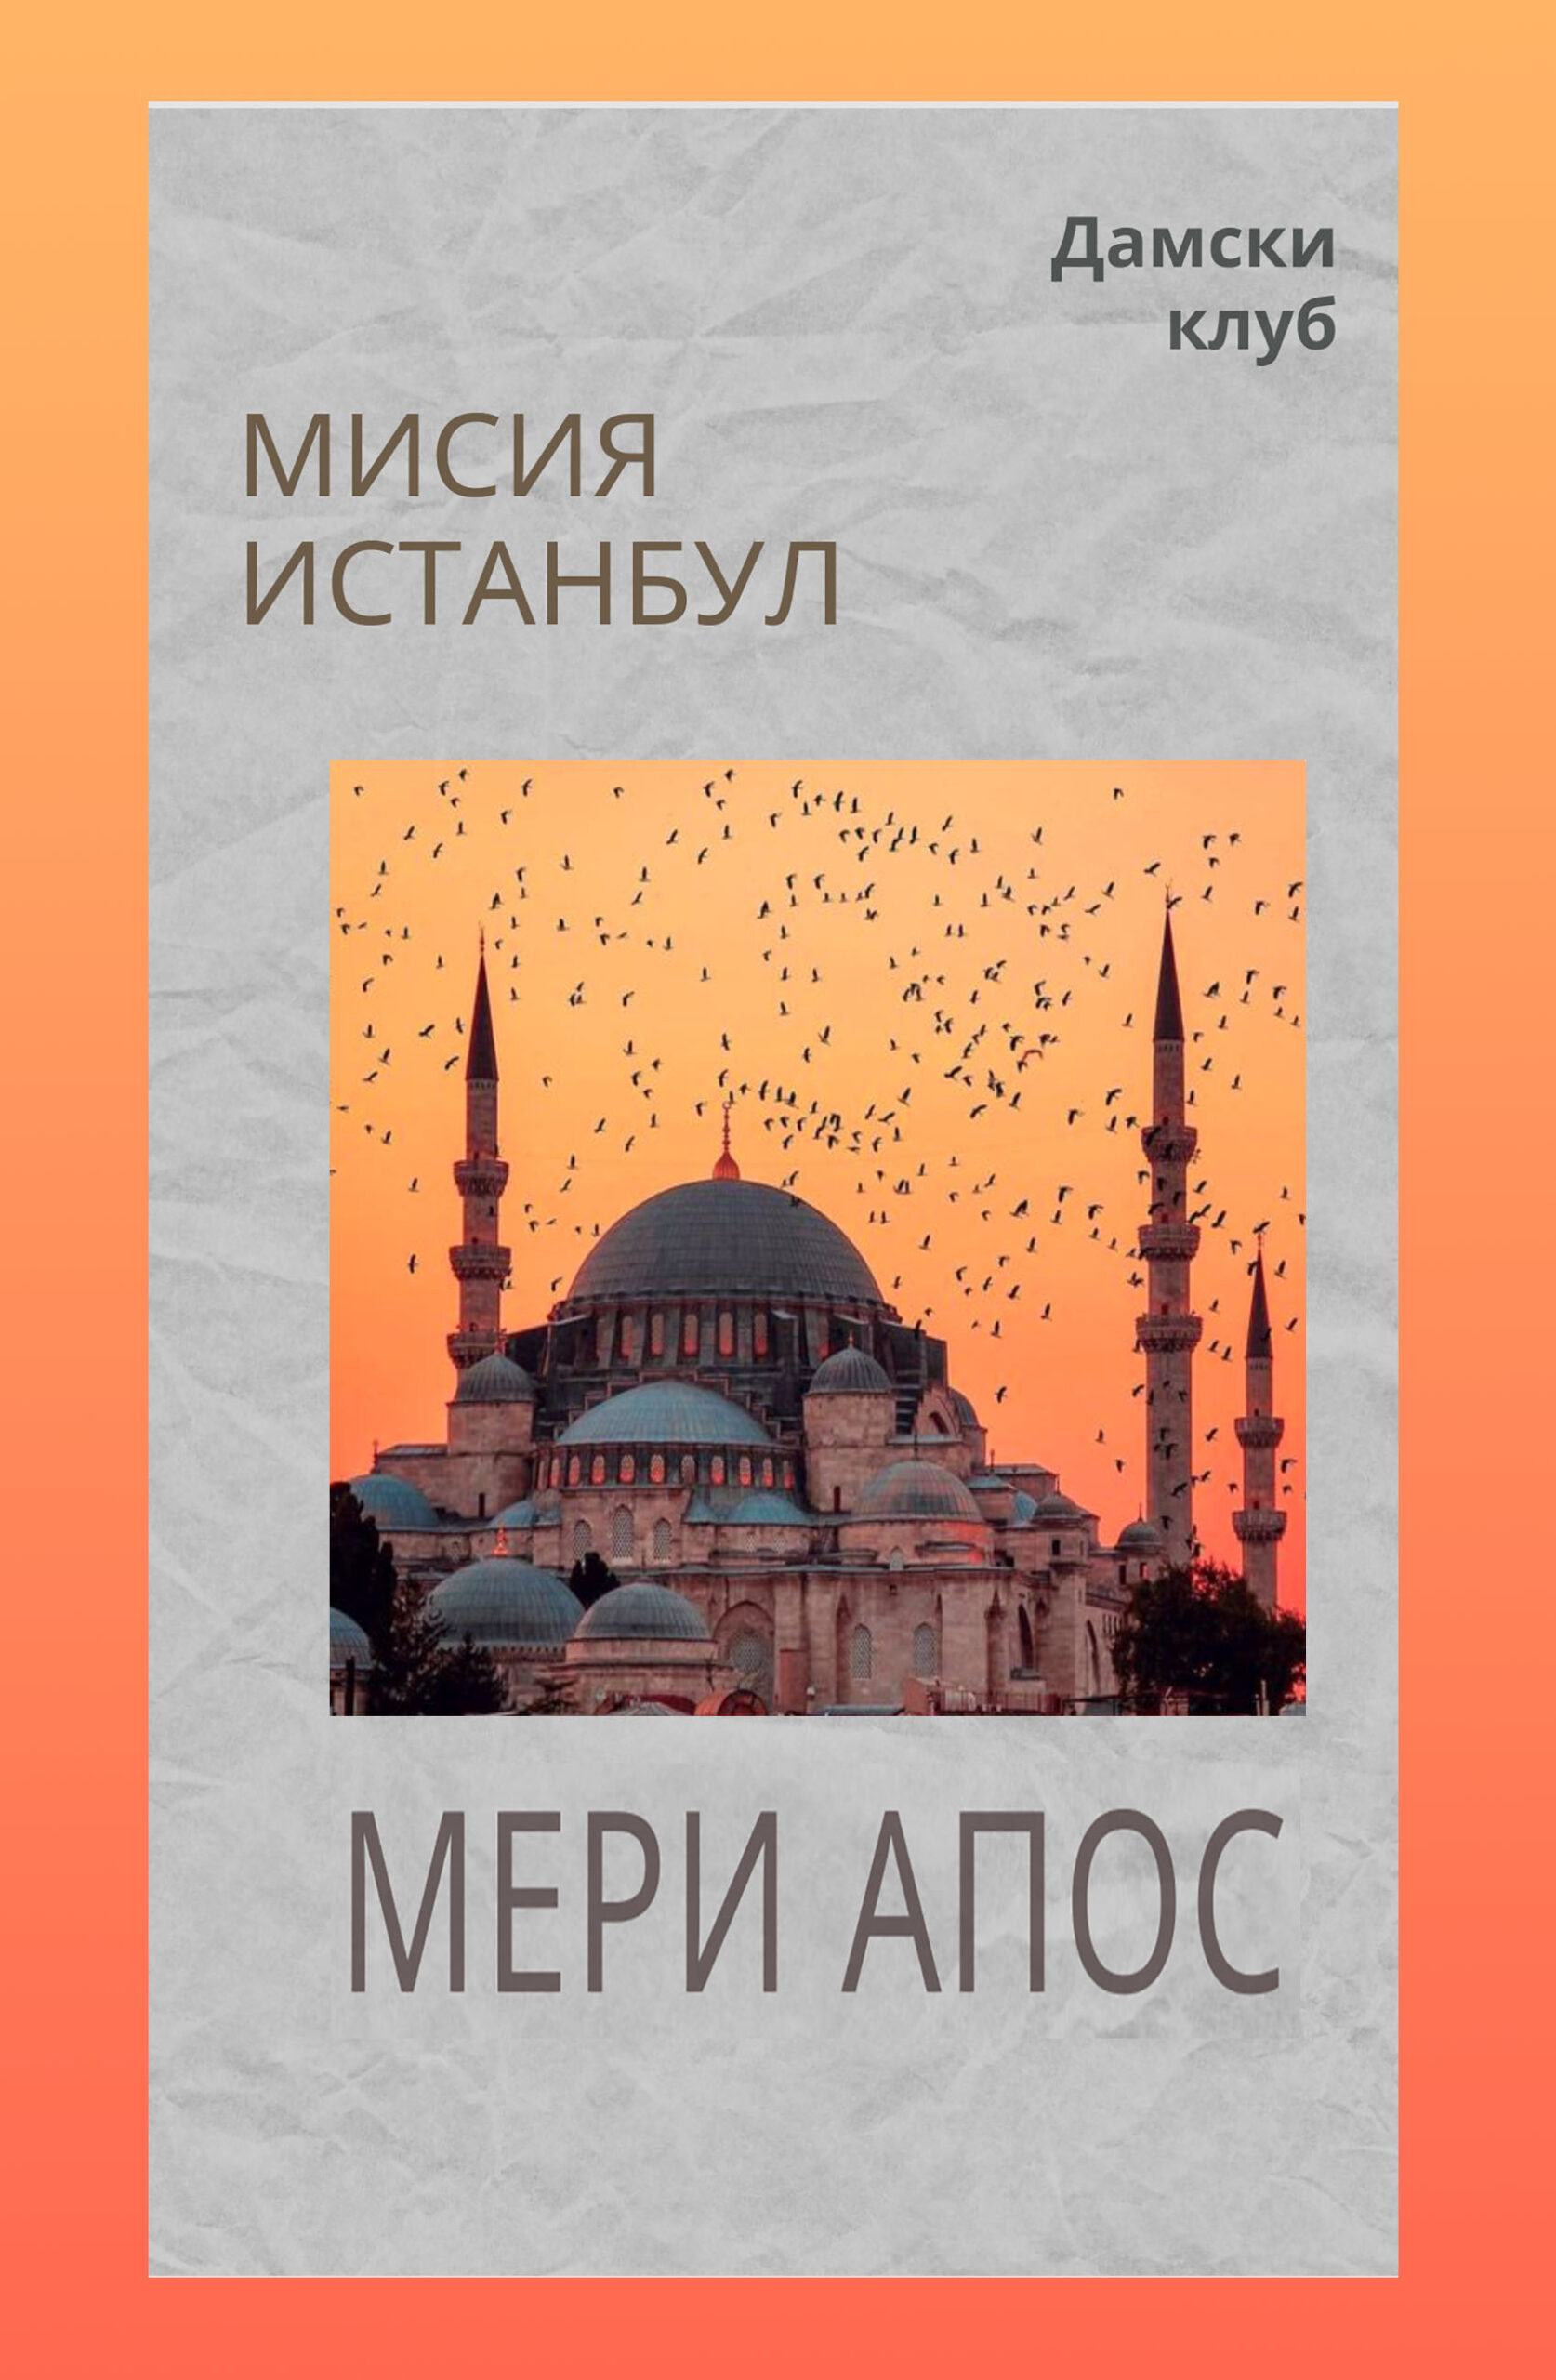 Литературна премиера на романа “Мисия Истанбул”